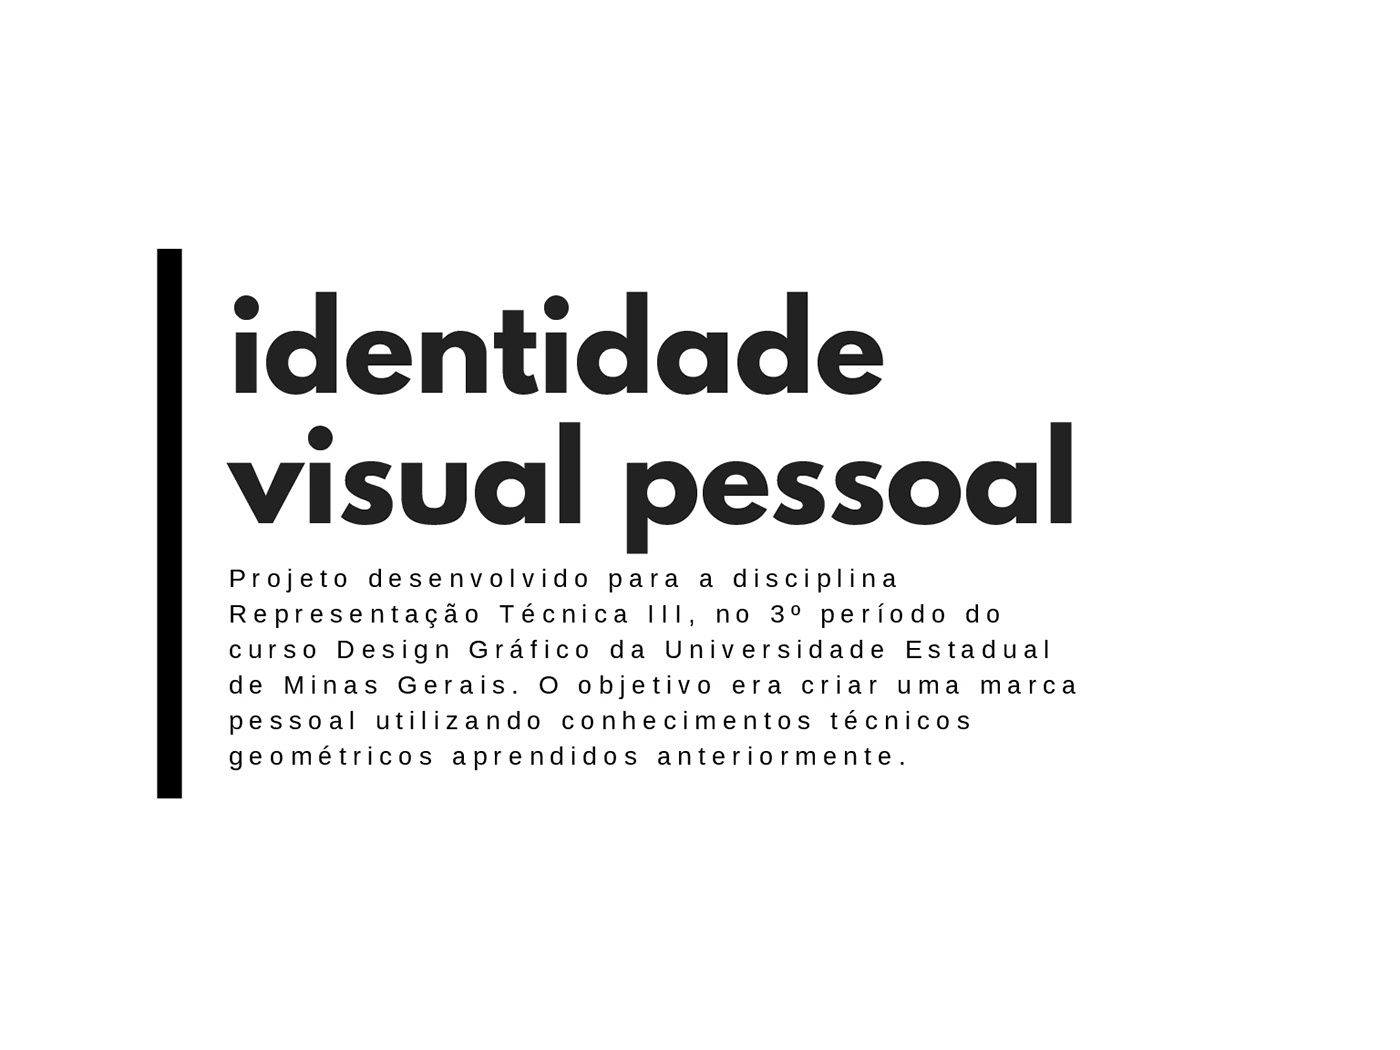 Marca pessoal identidade visual olho eye design gráfico designer gráfico UEMG logo representação técnica rtIII